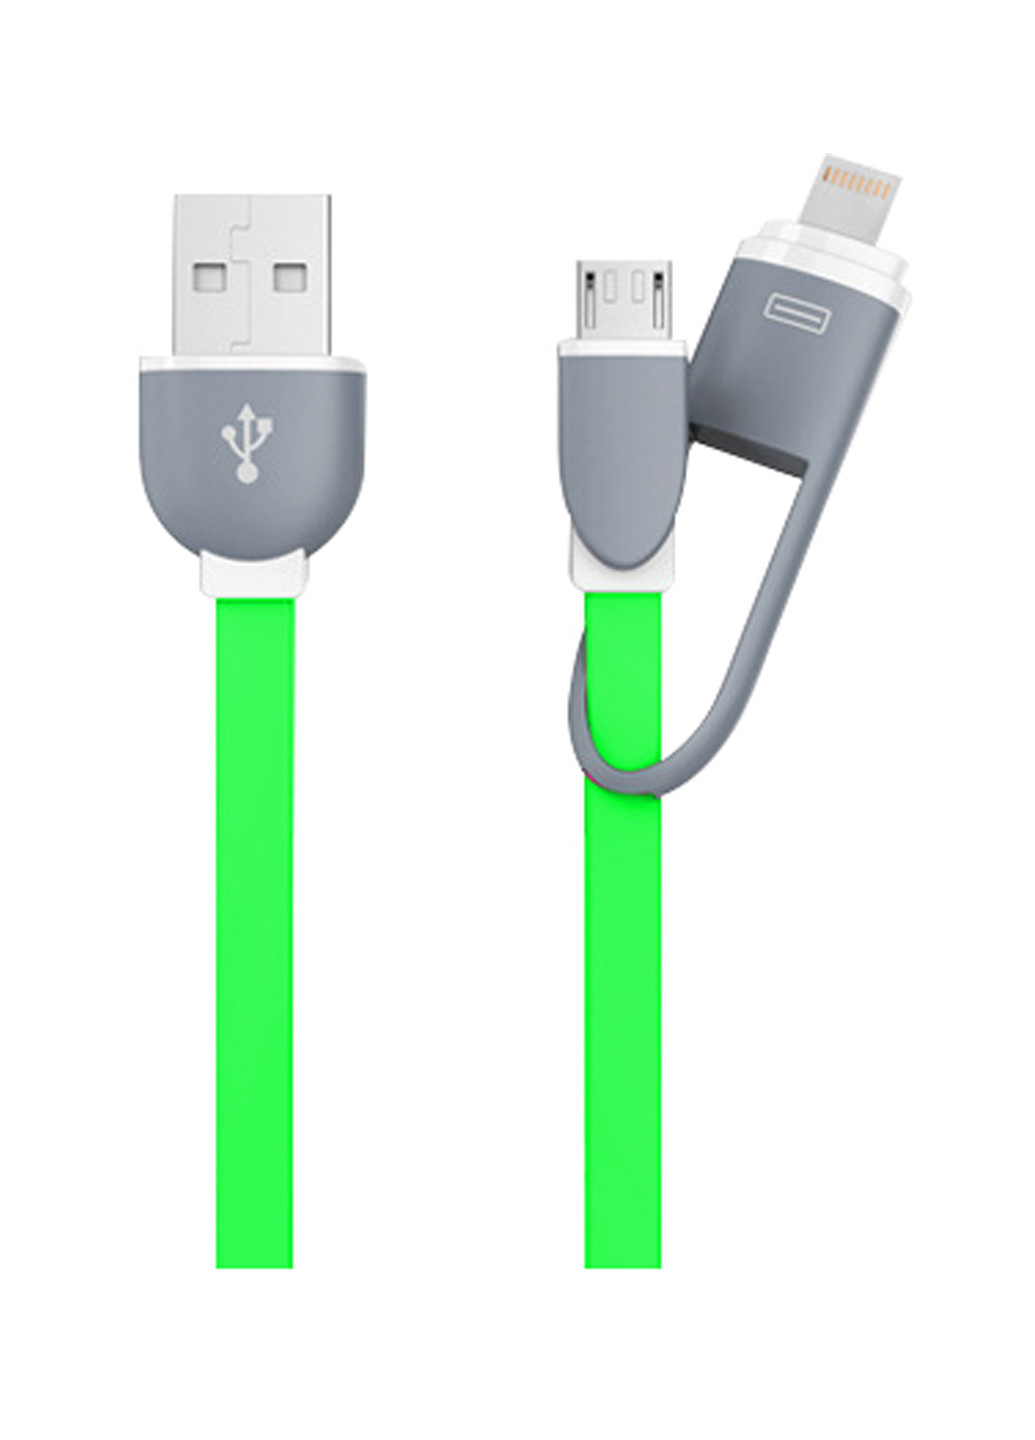 Кабель-брелок USB key Green, 2 в 1 - Lightning, Micro USB, 25 см XoKo sc-201 (132572862)